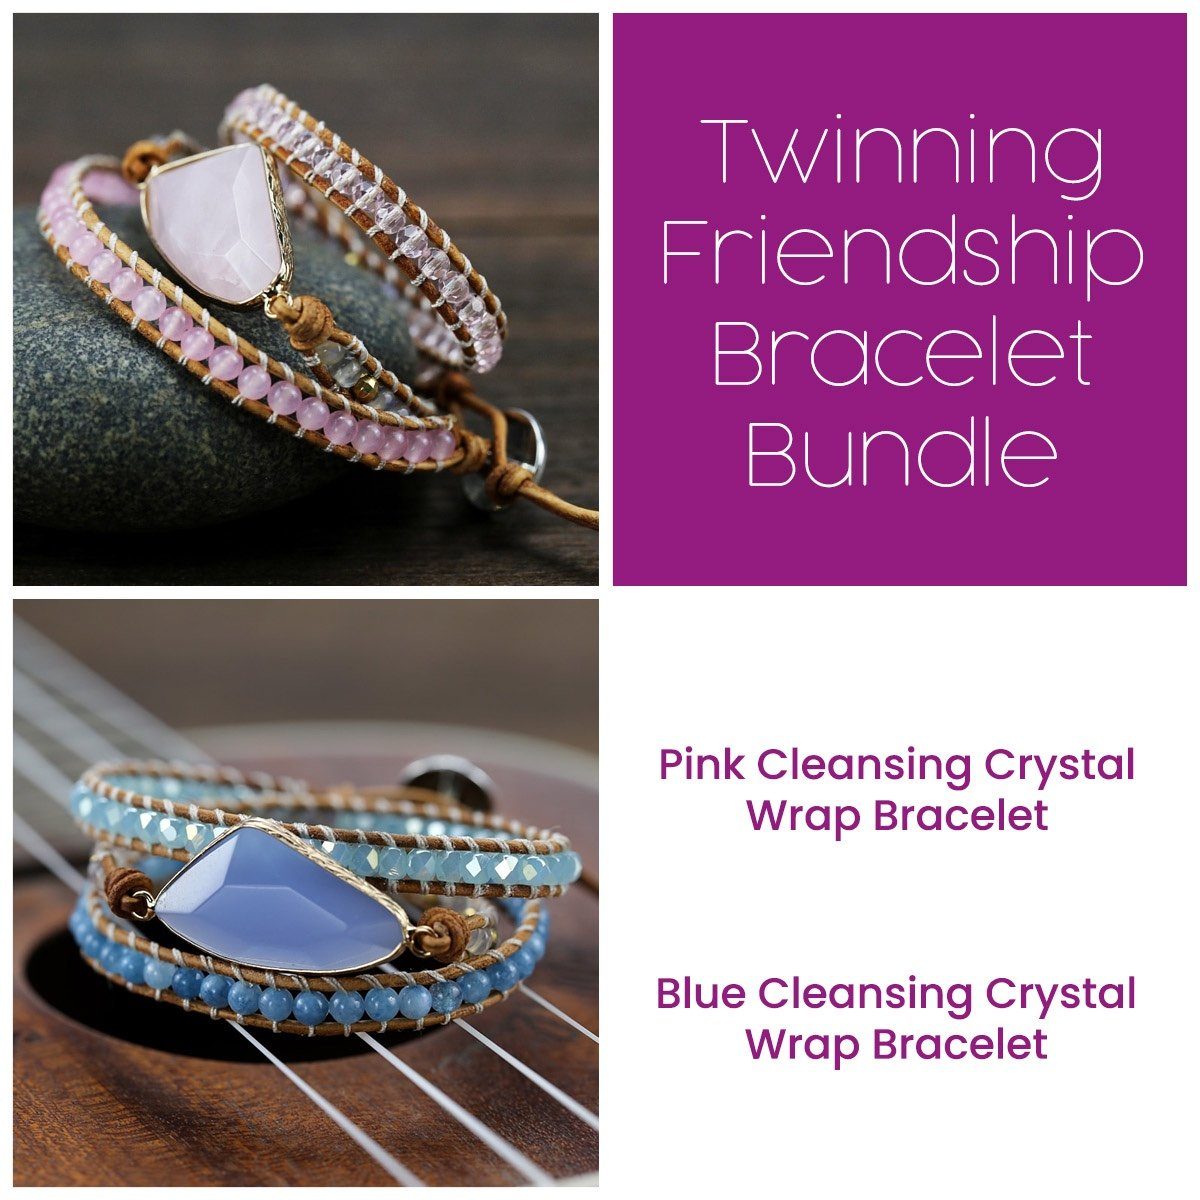 Twinning Friendship Bracelet Bundle